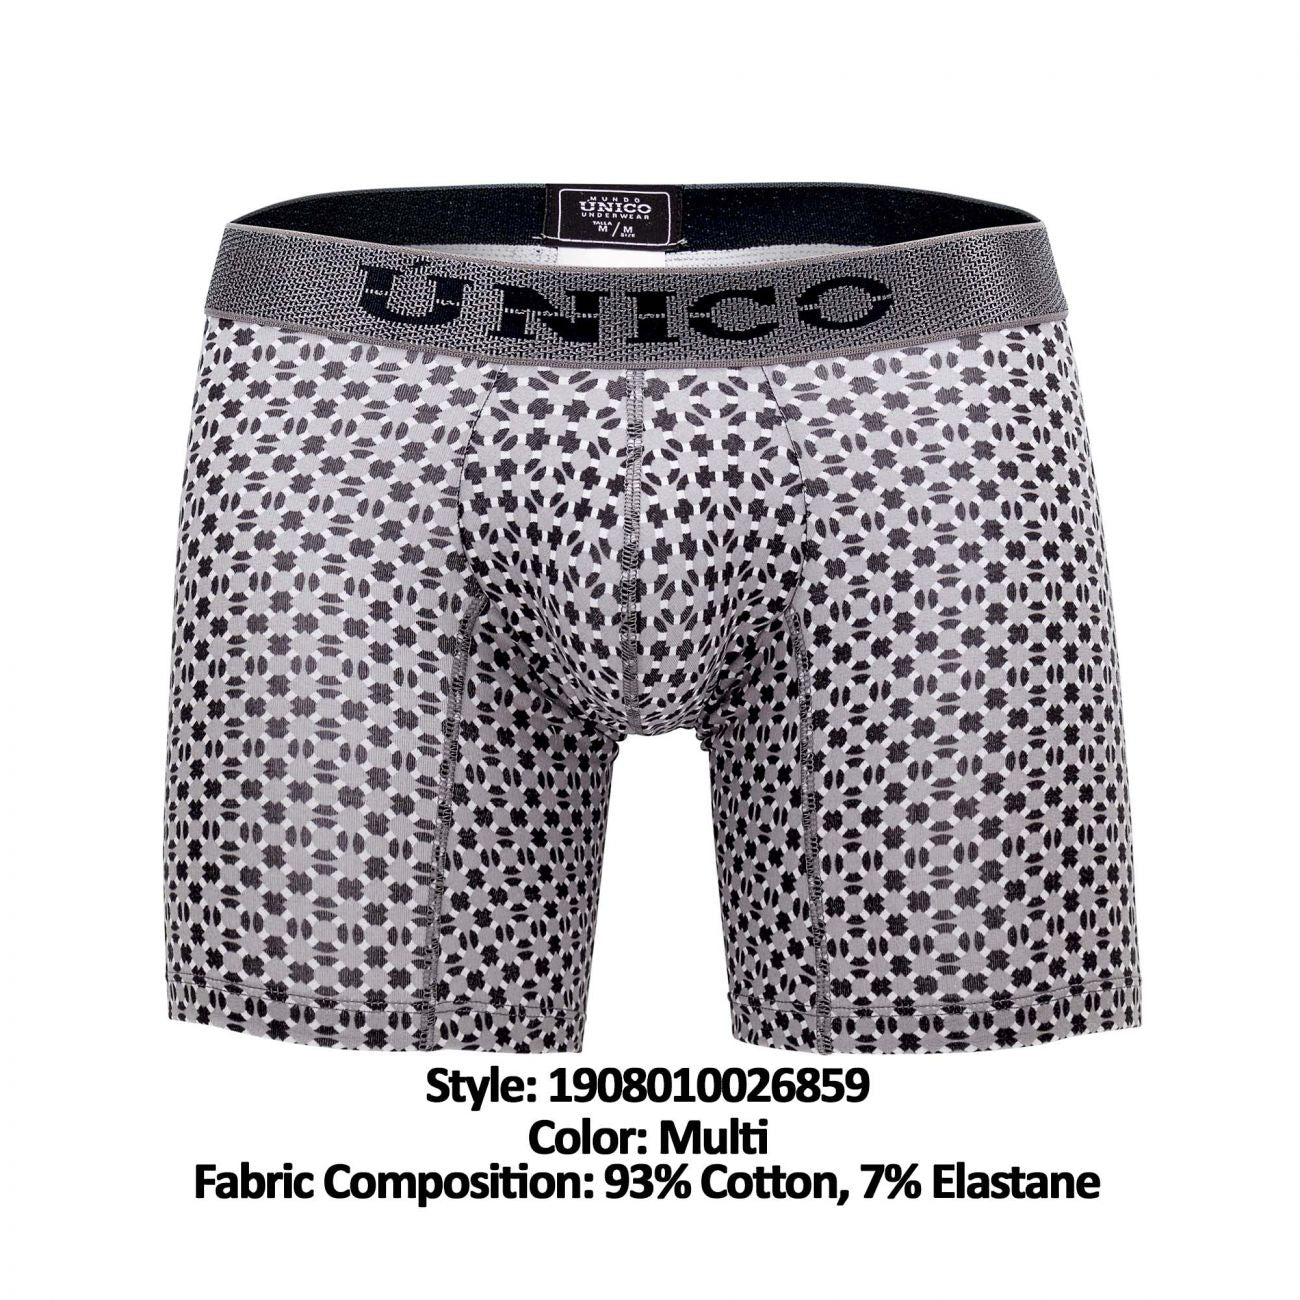 Unico 1908010026859 Boxer Briefs Percepcion Multi